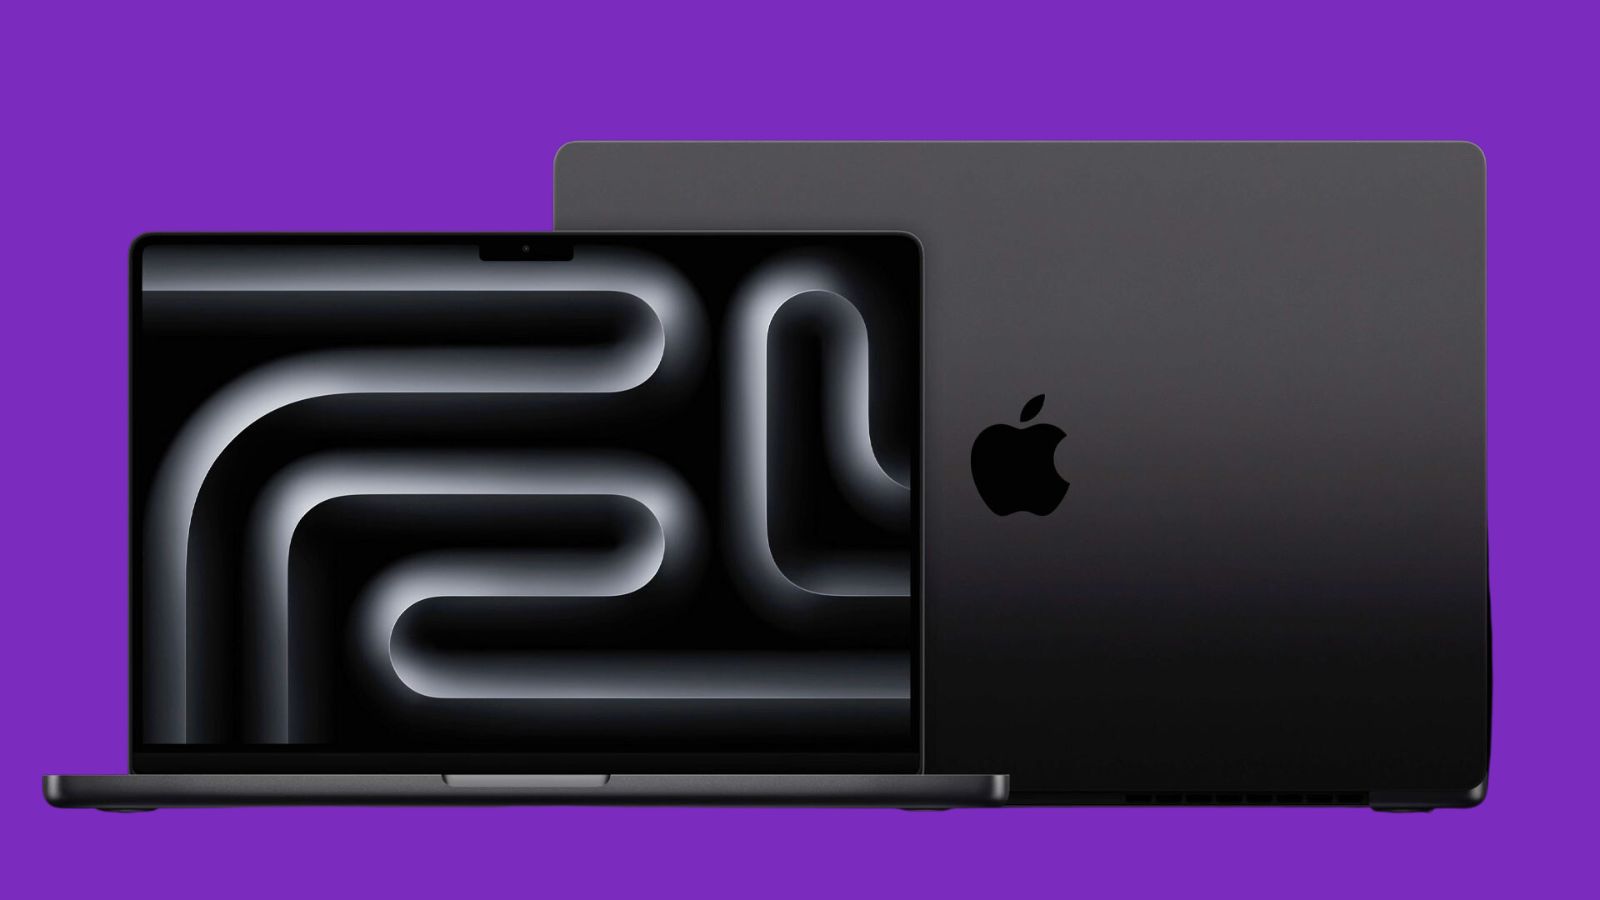 În cadrul prezentării, Apple a dezvăluit noile MacBook Pro și iMac. Iată cum arată acestea